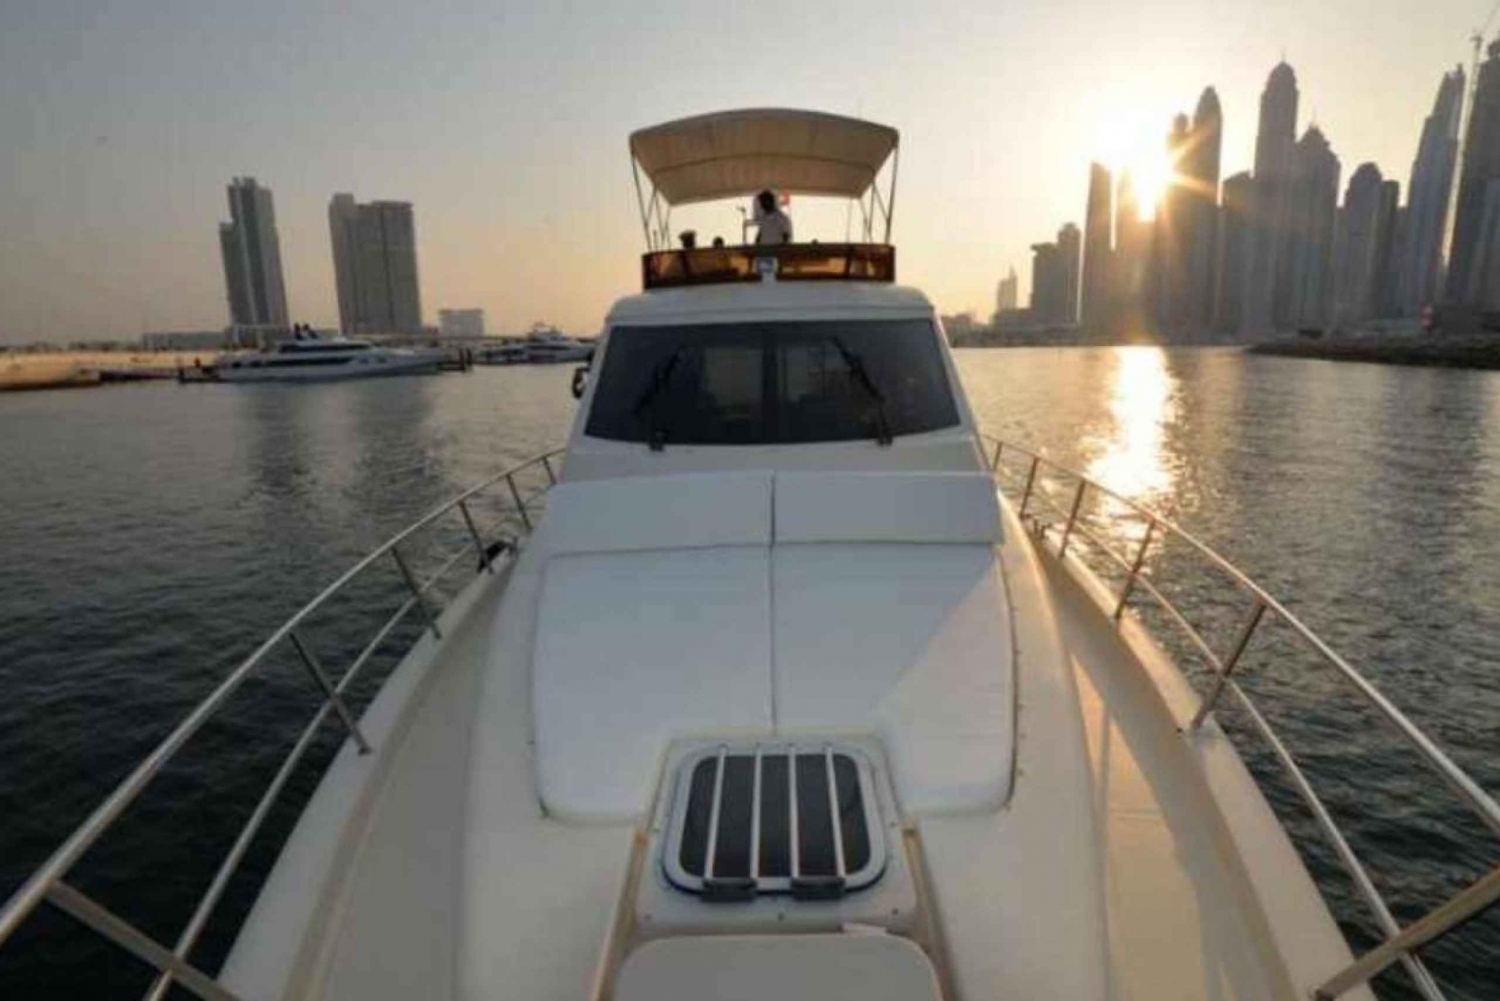 Gallivant 60ft Luxury Yacht